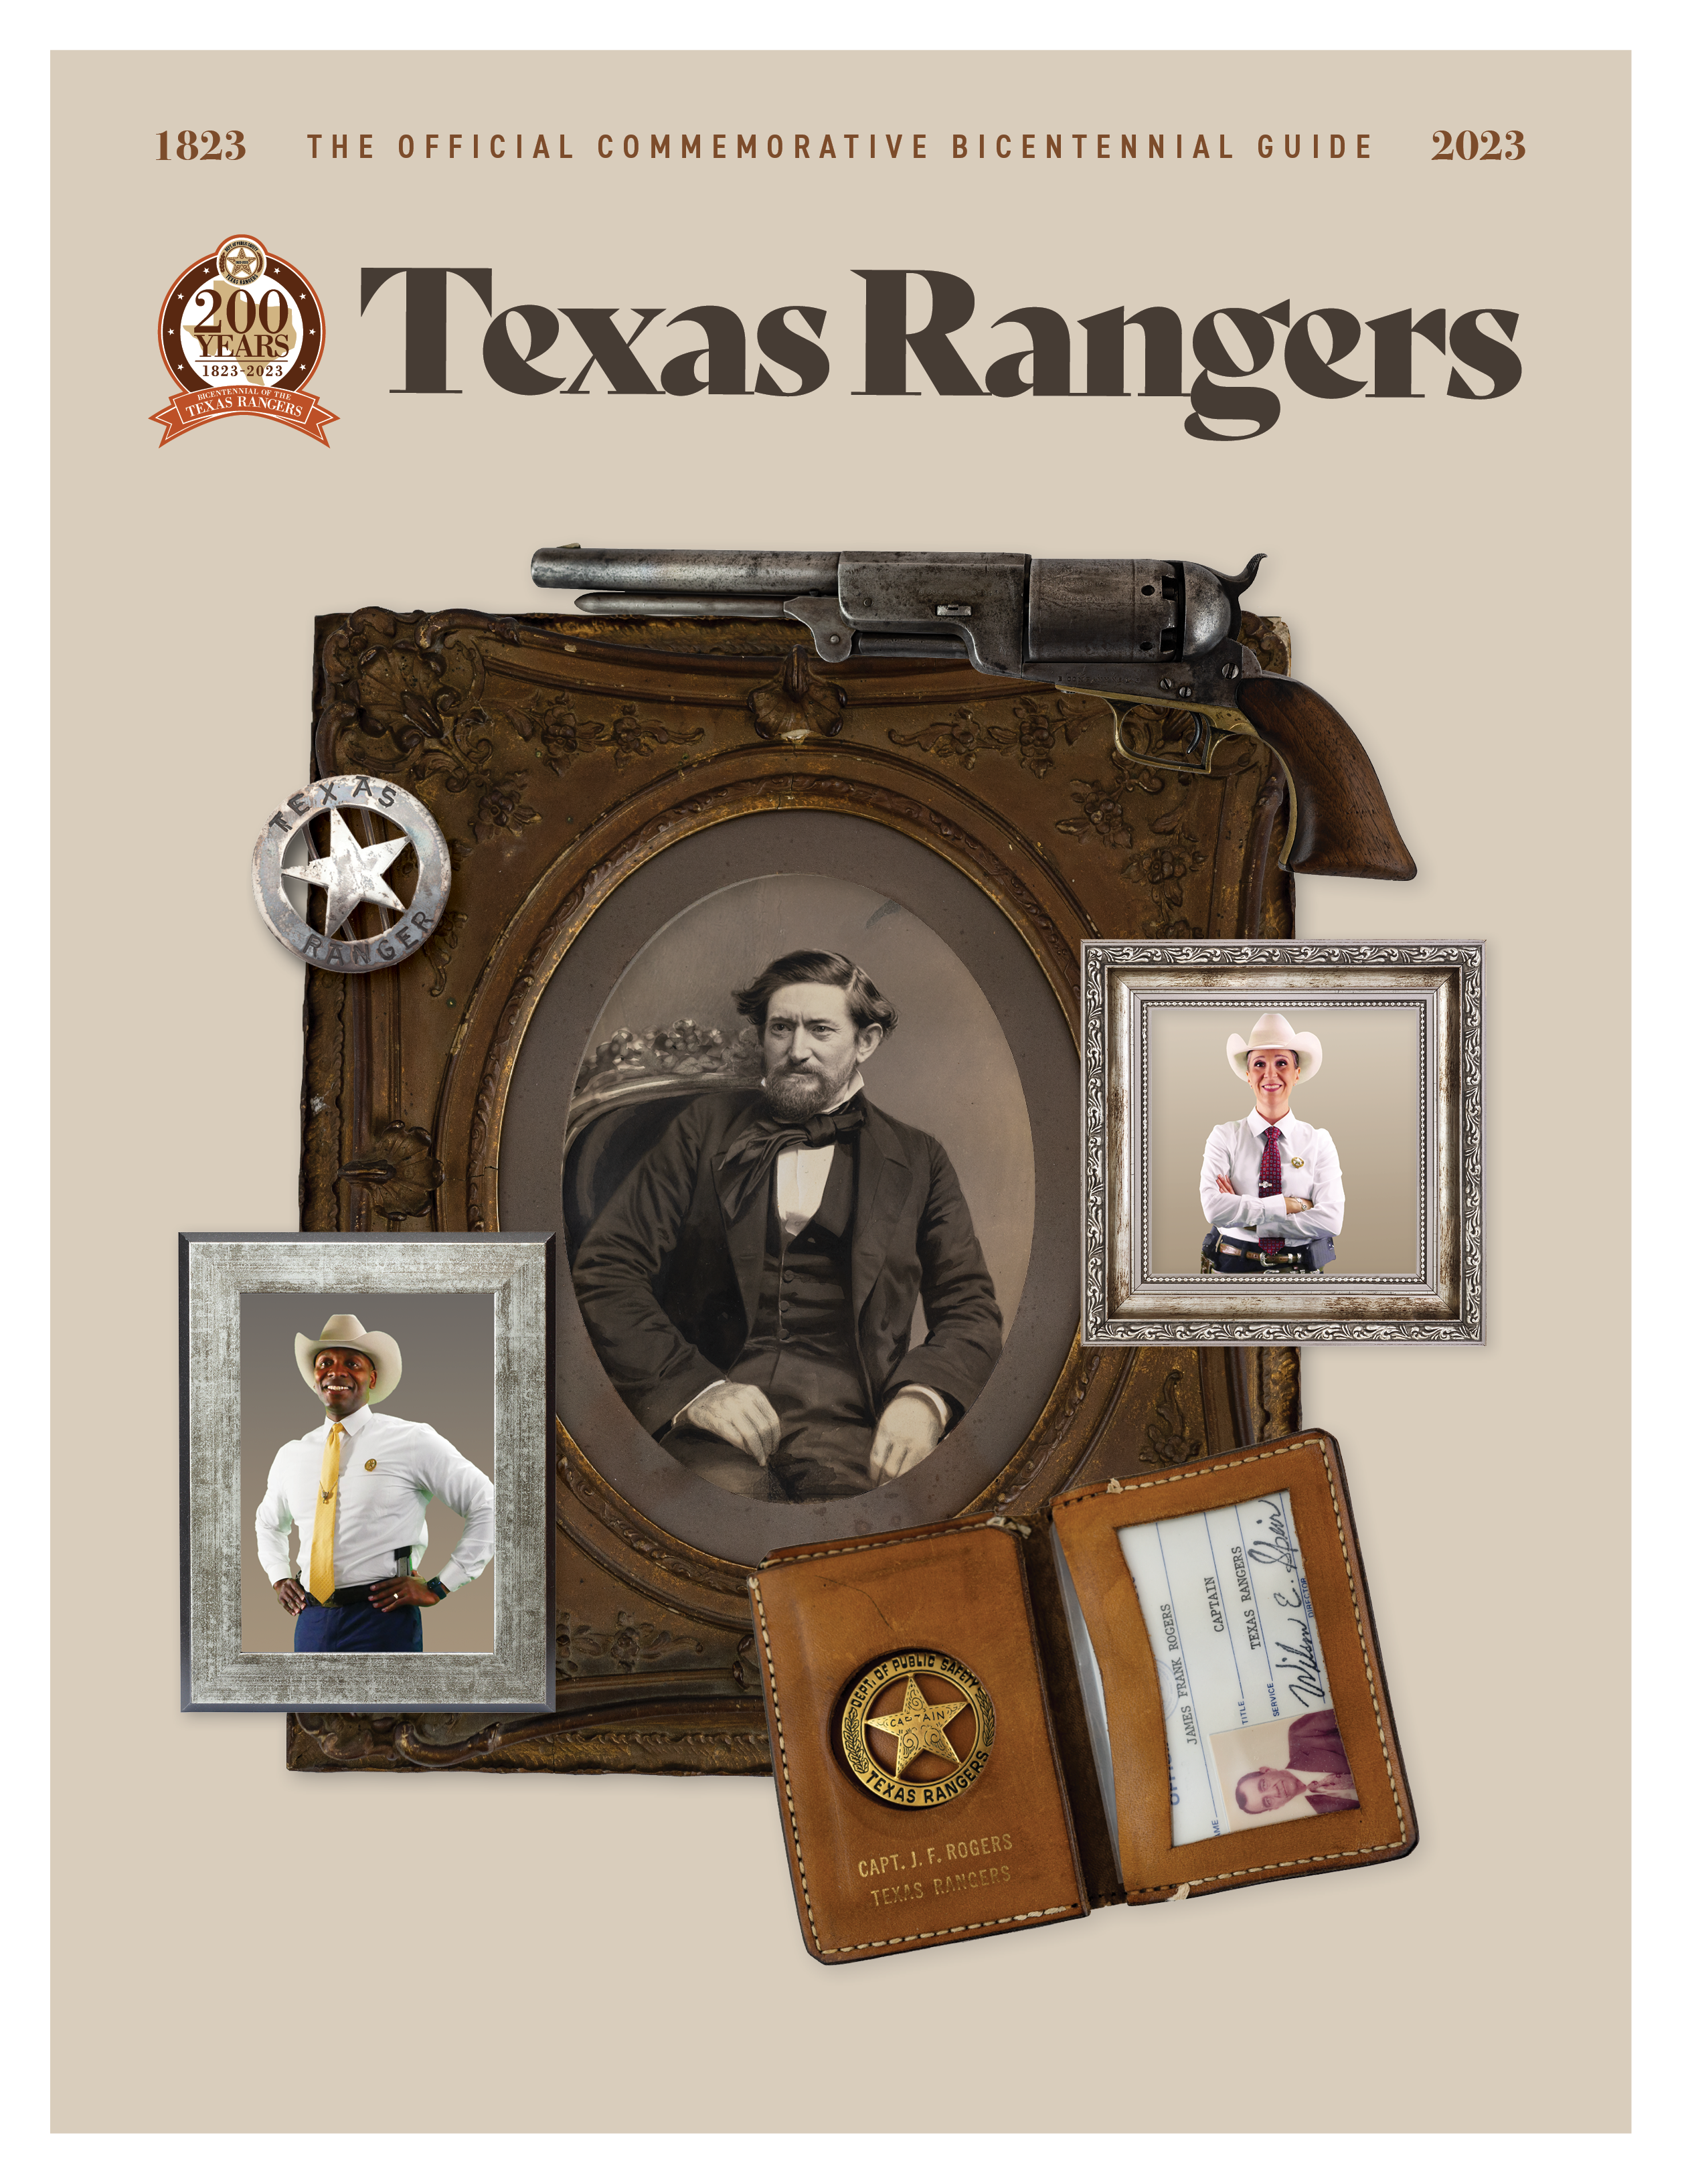 Texas Rangers Bicentennial Guide